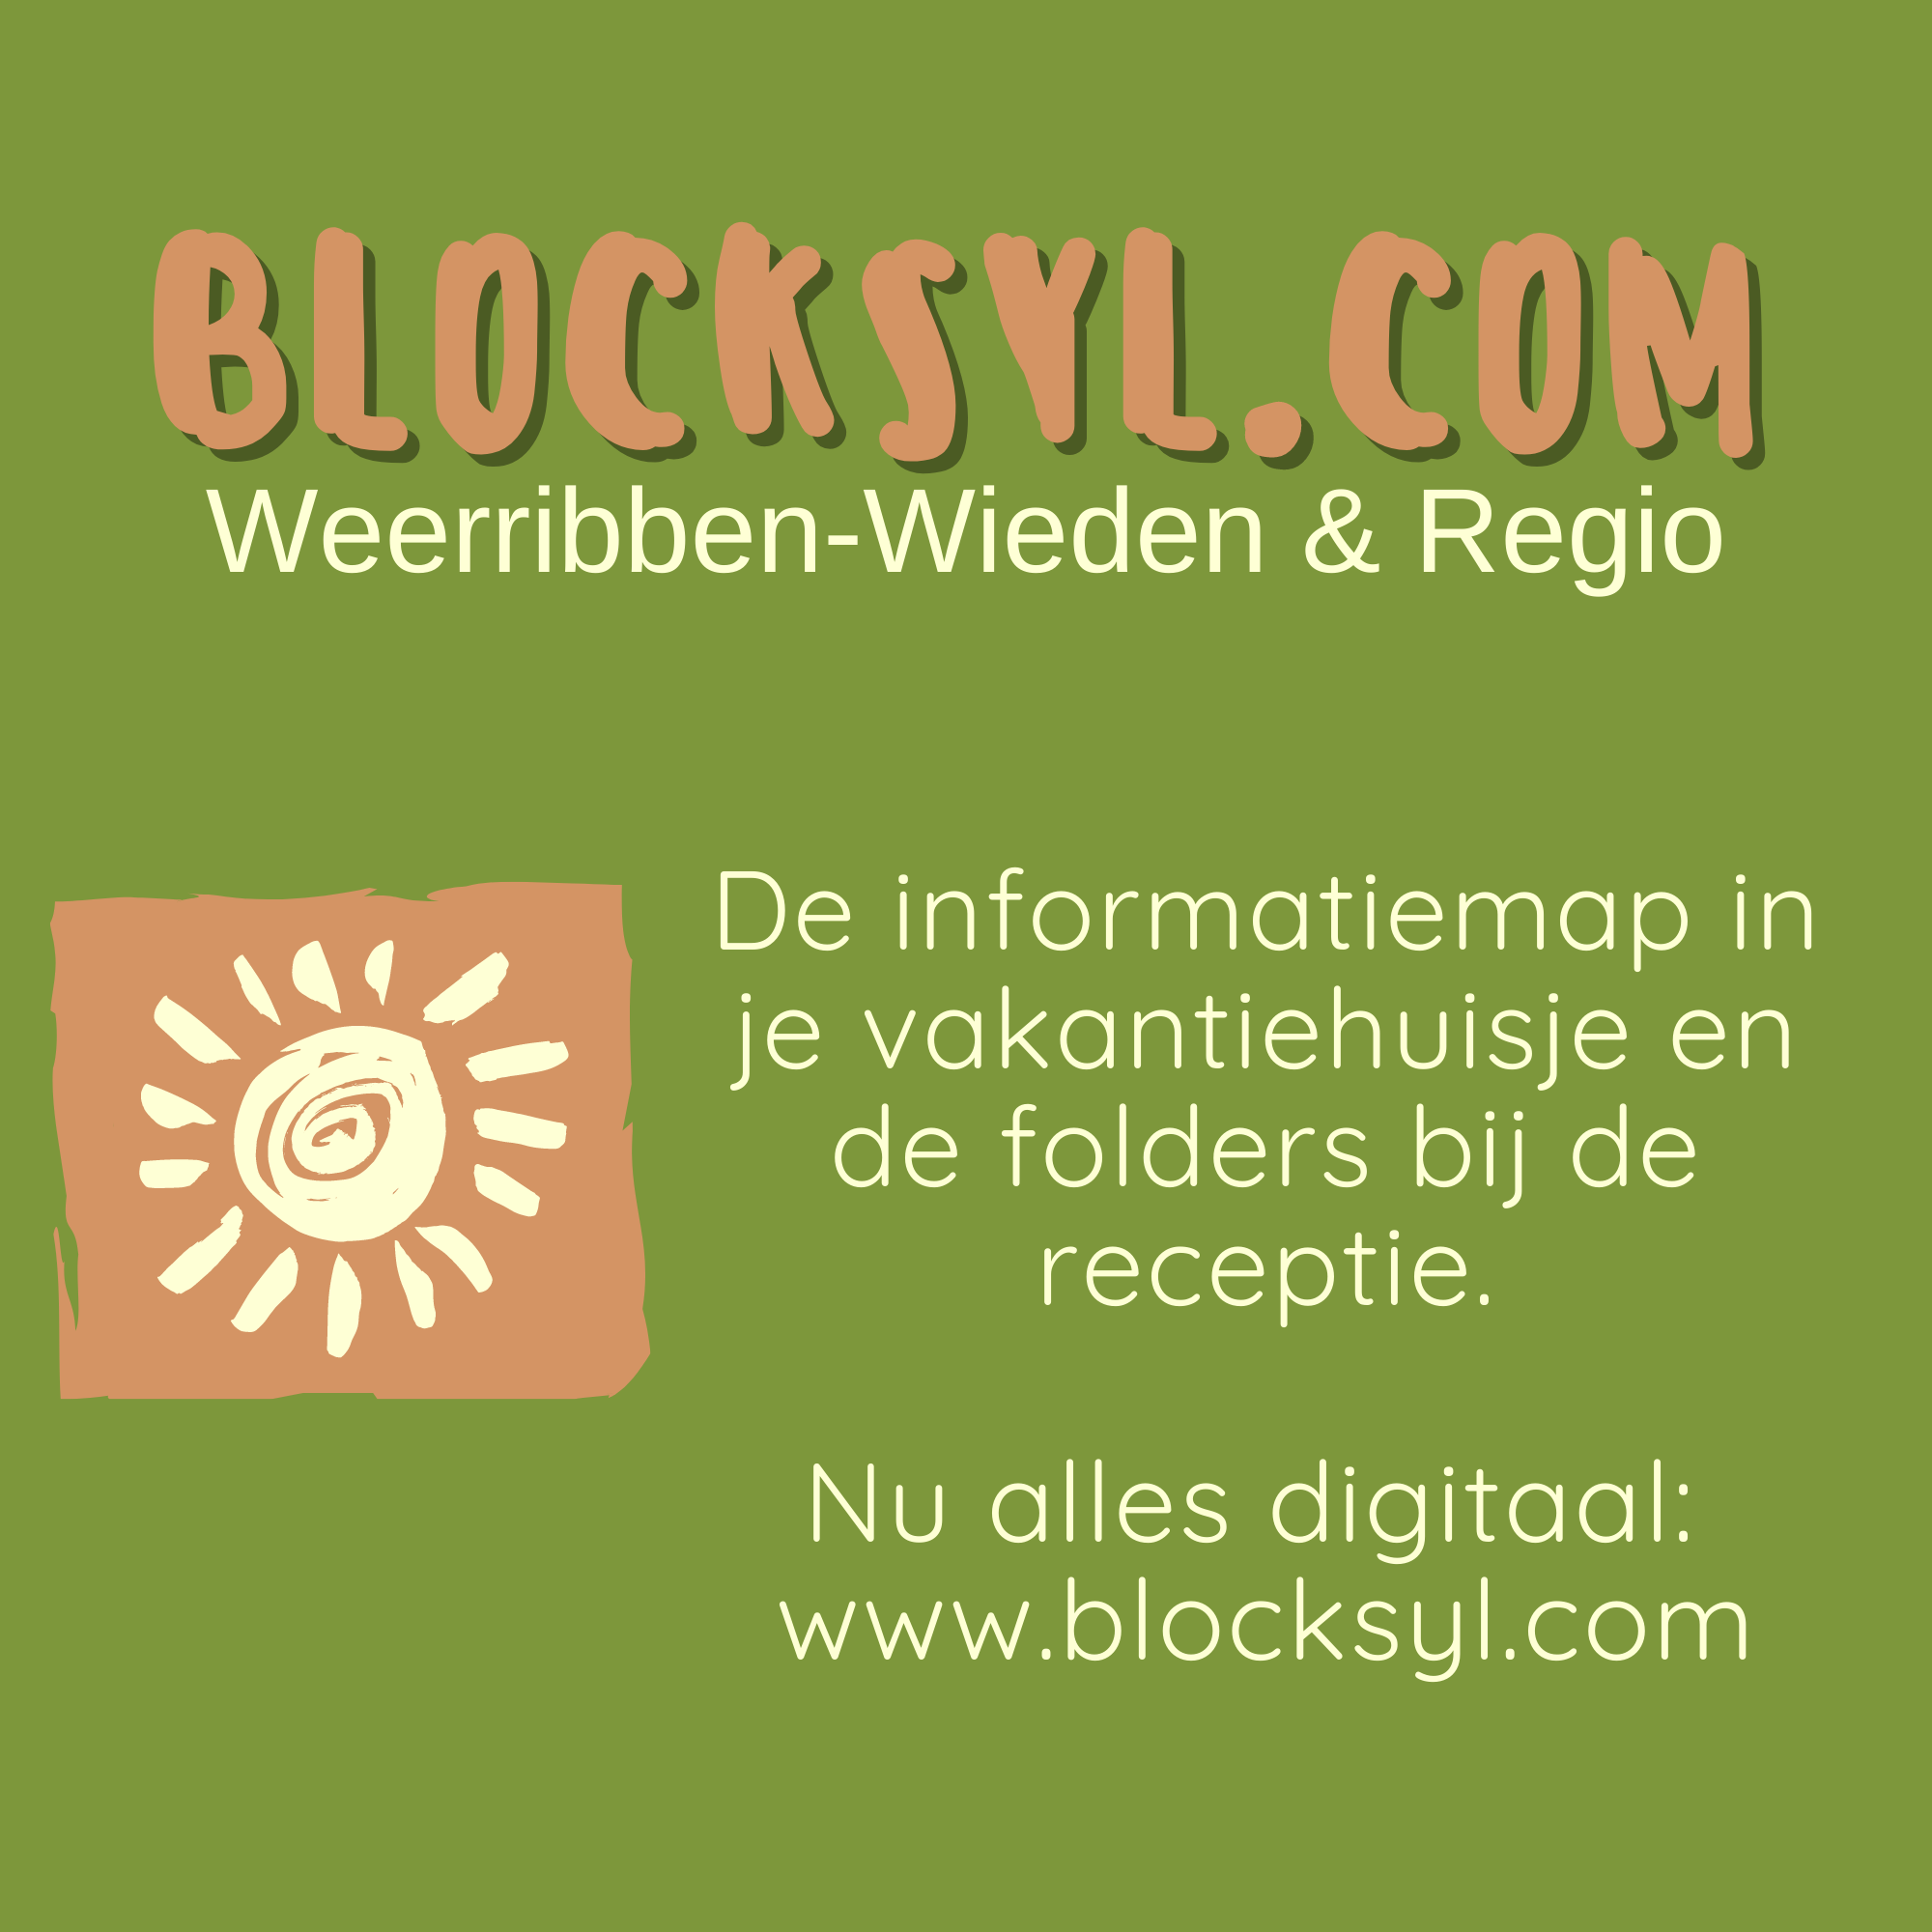 Blocksyl_logo_met_tekst.png